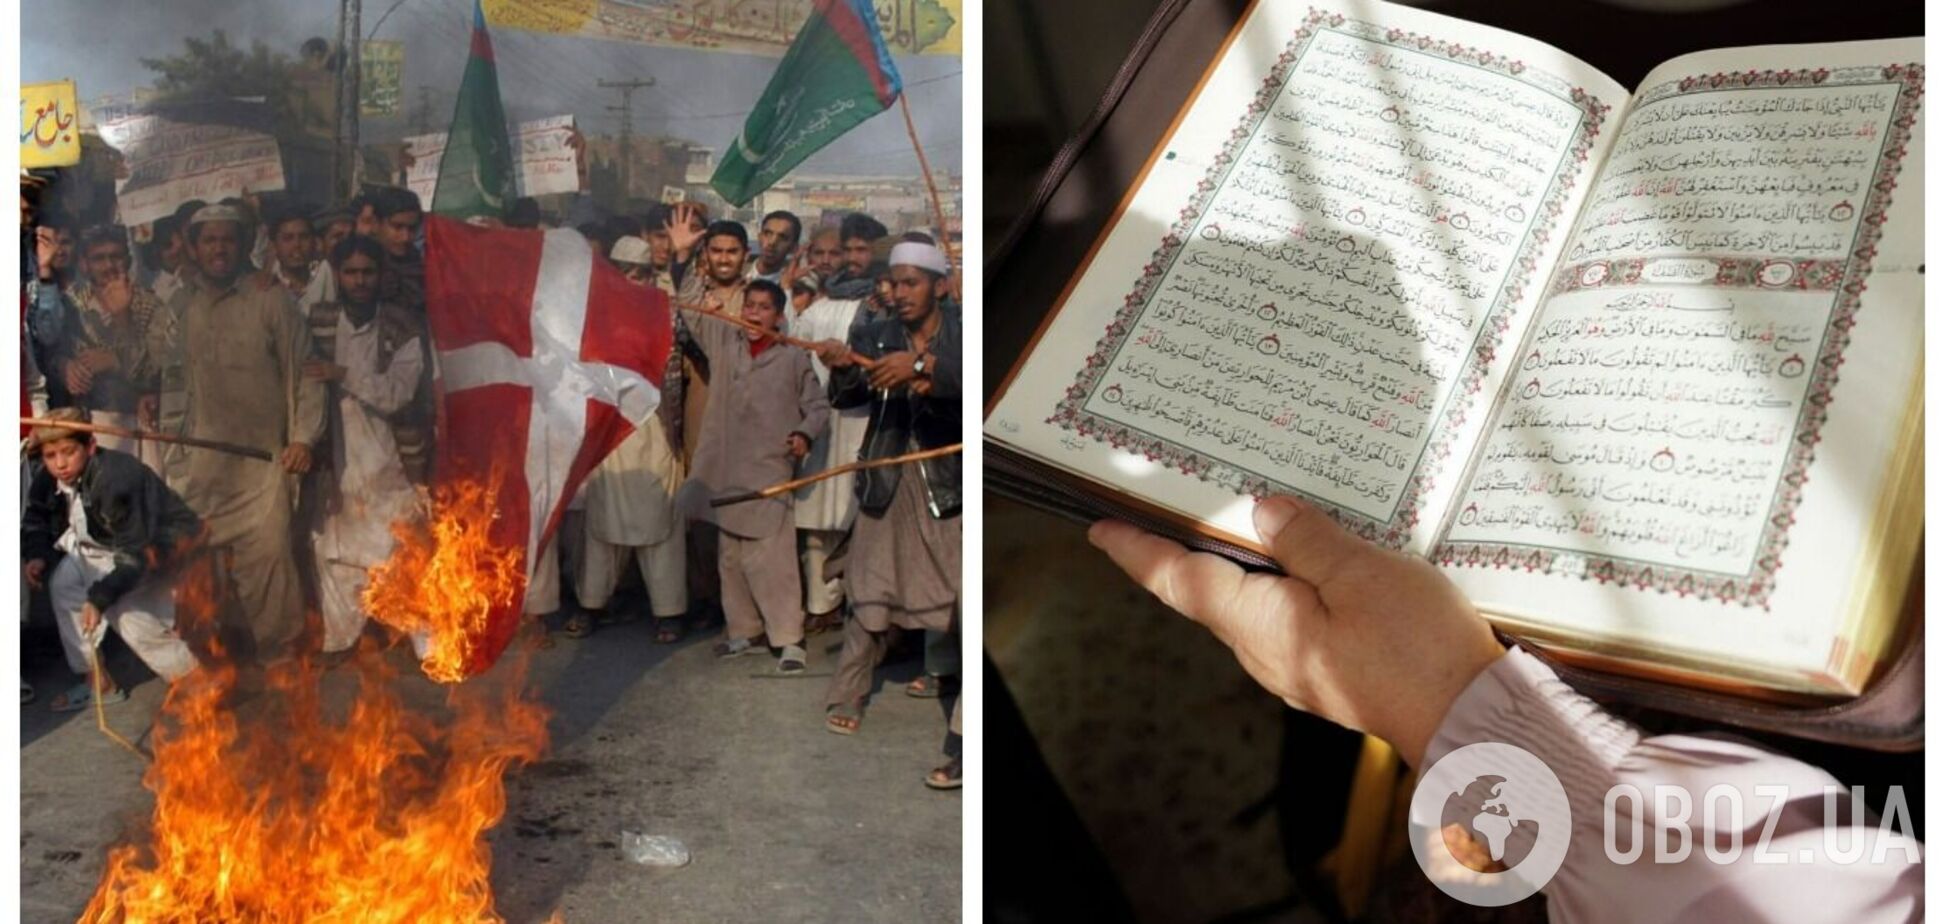 Данию предупредили о возможности терактов после акций с сожжением Корана